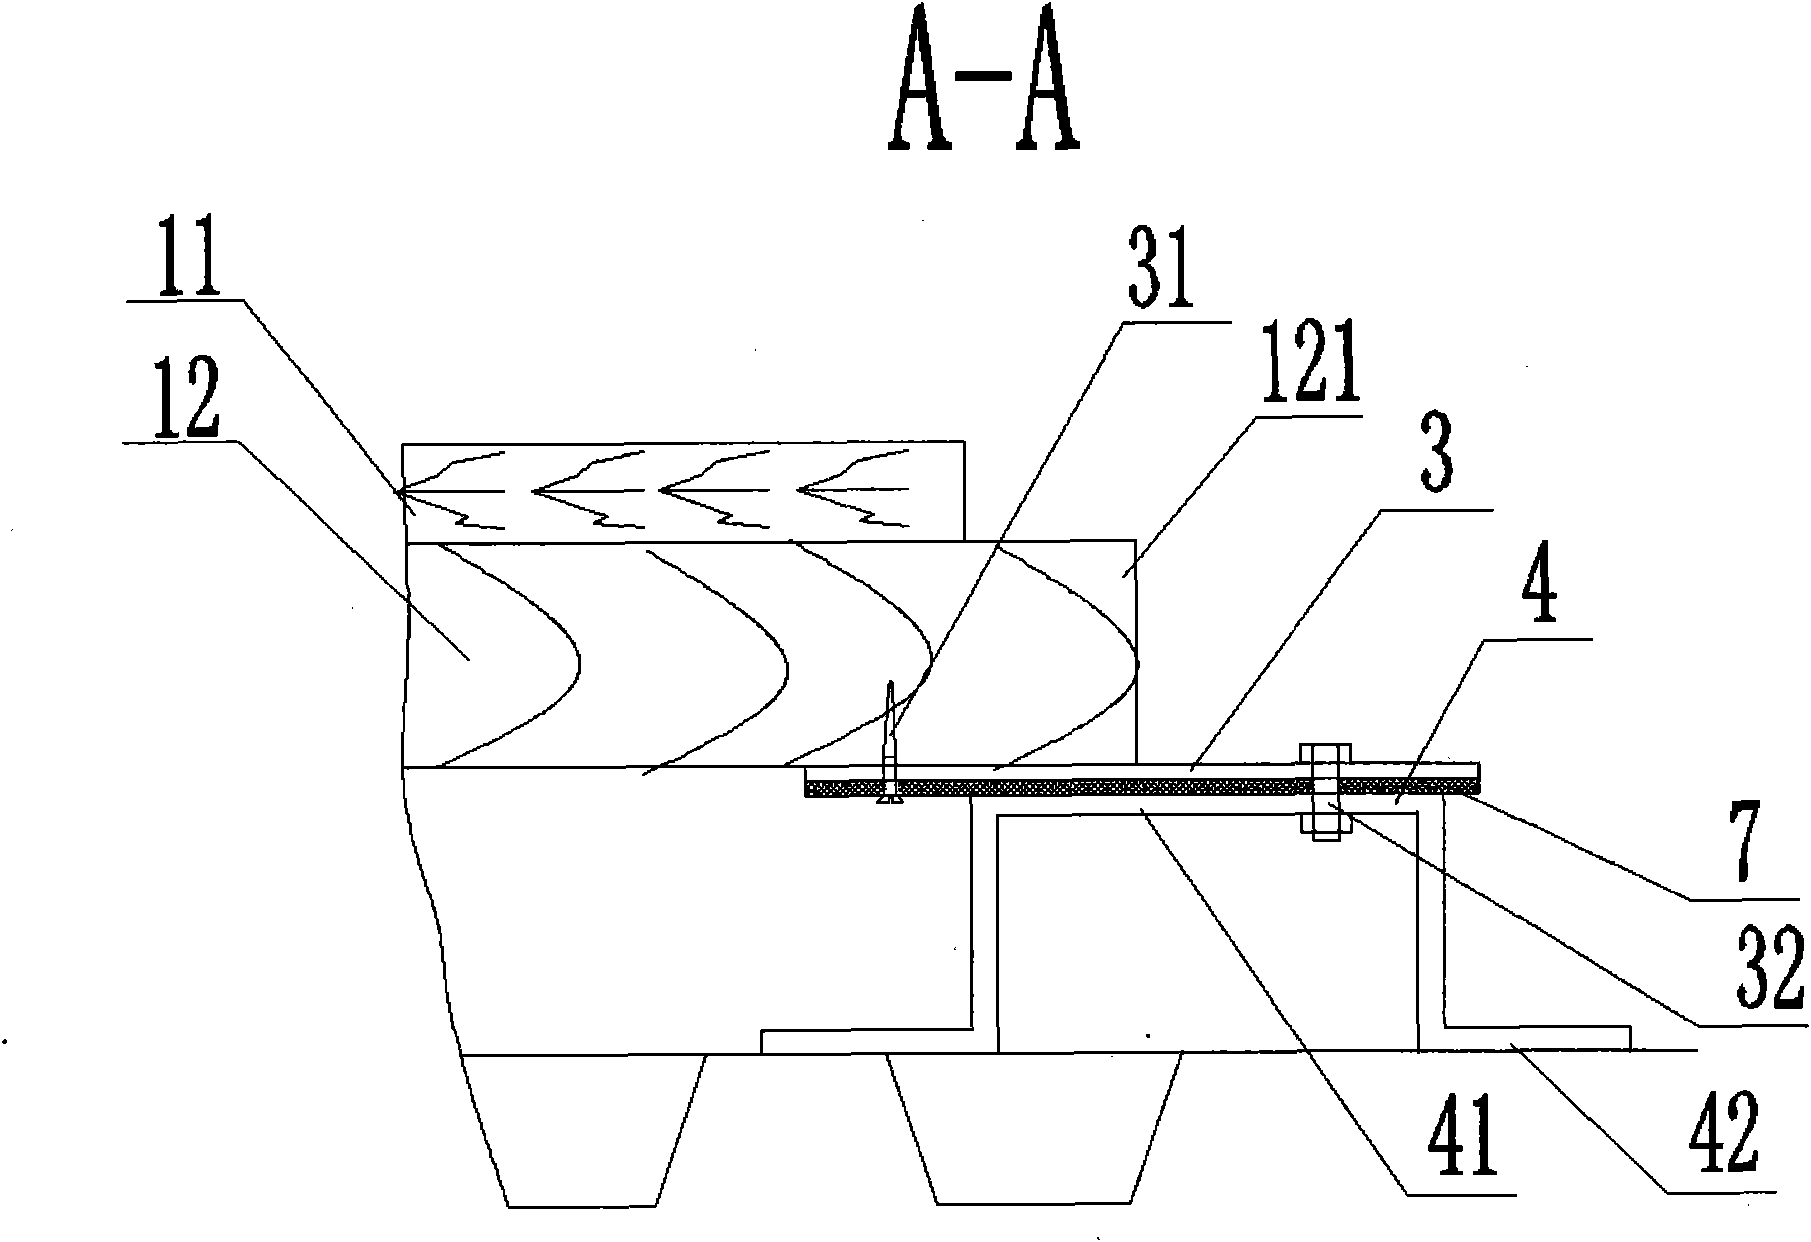 Method for assembling railway passenger car modular floors